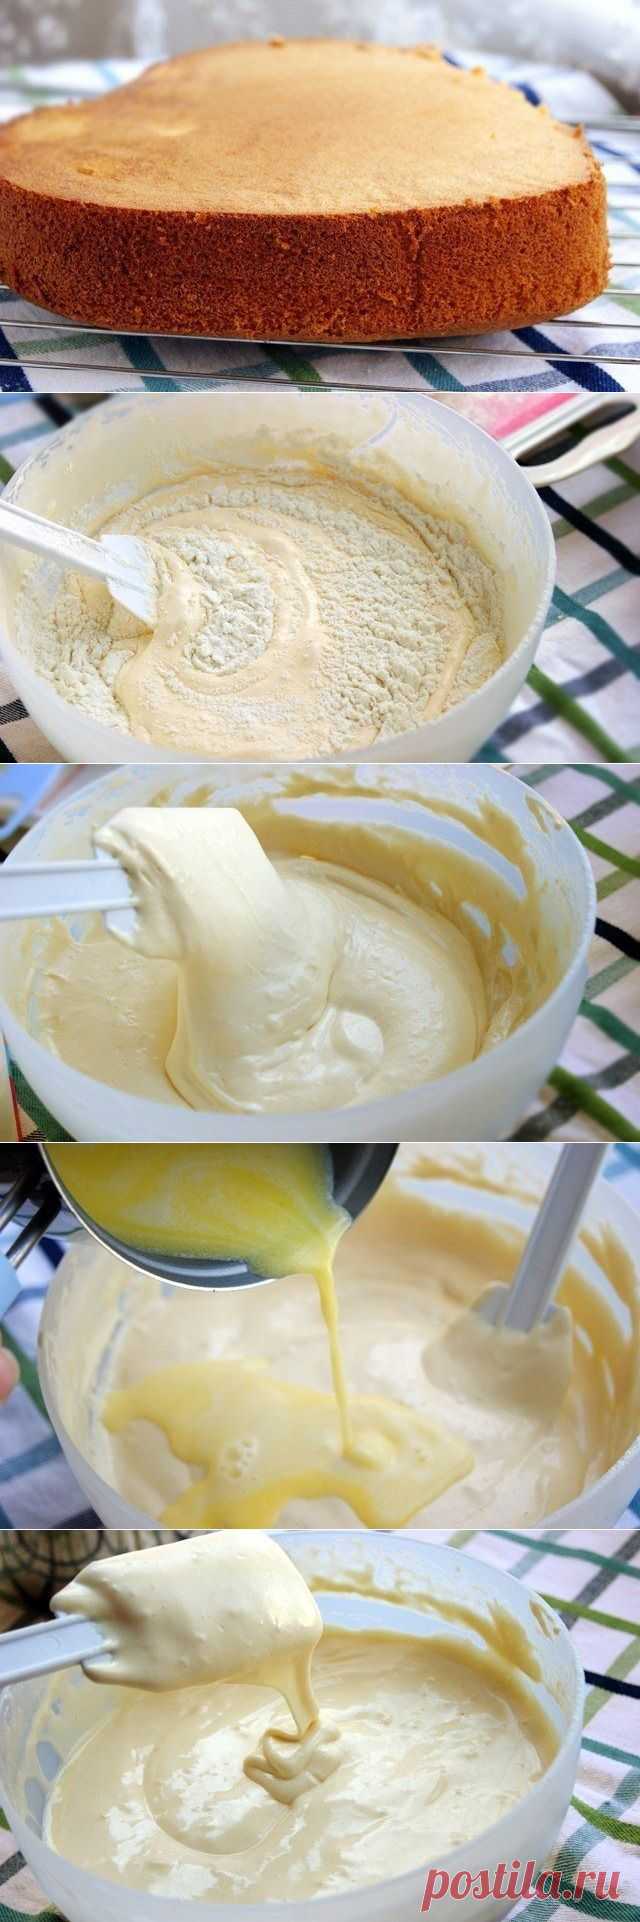 Как приготовить бисквит на горячем молоке - рецепт, ингридиенты и фотографии